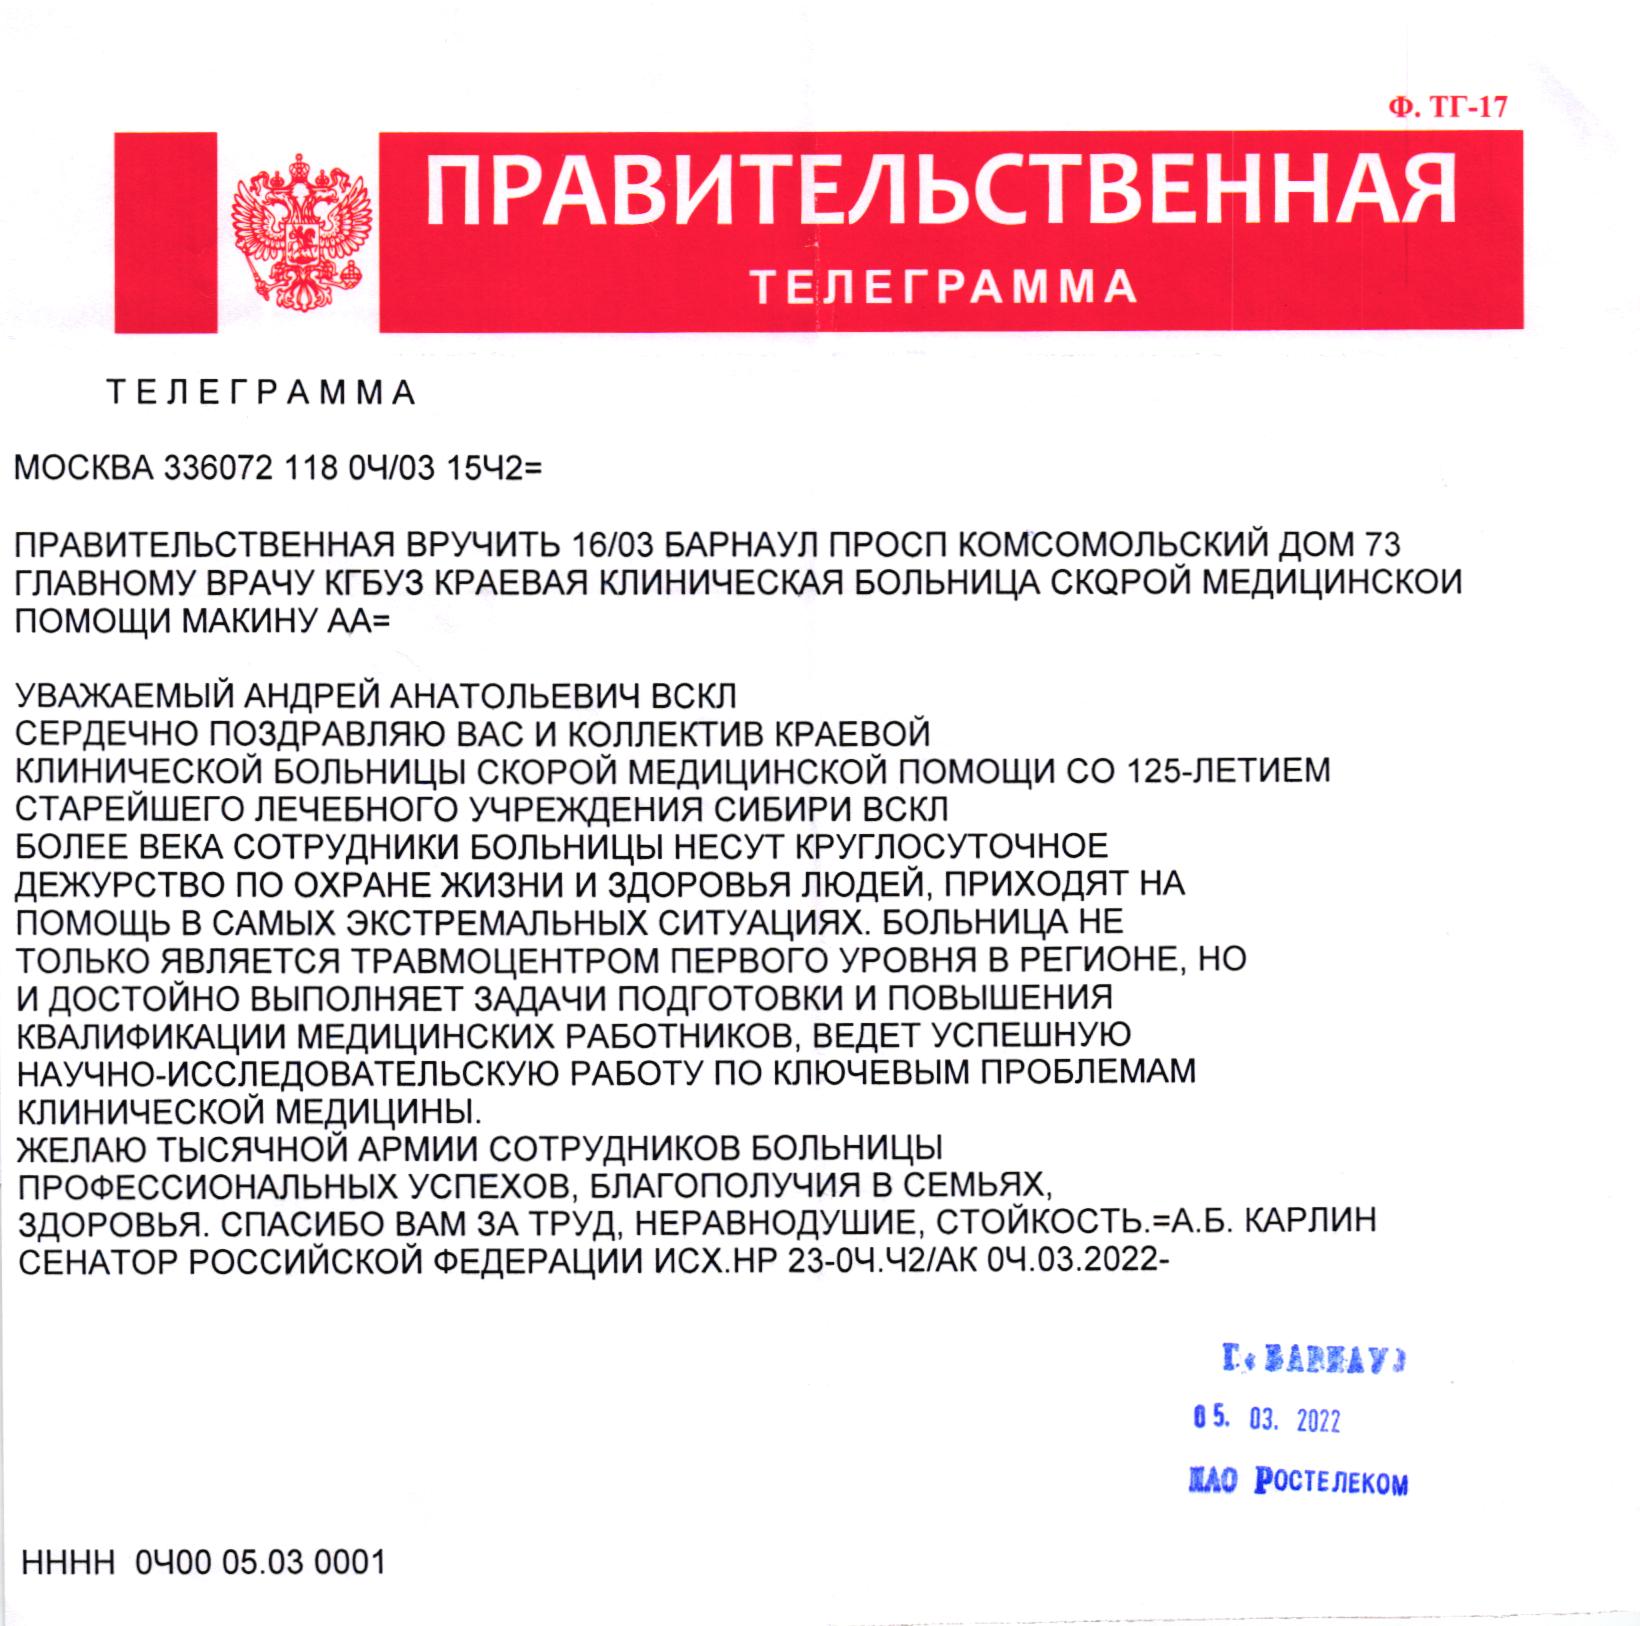 Отправить телеграмму по телефону почта россии телефон фото 111